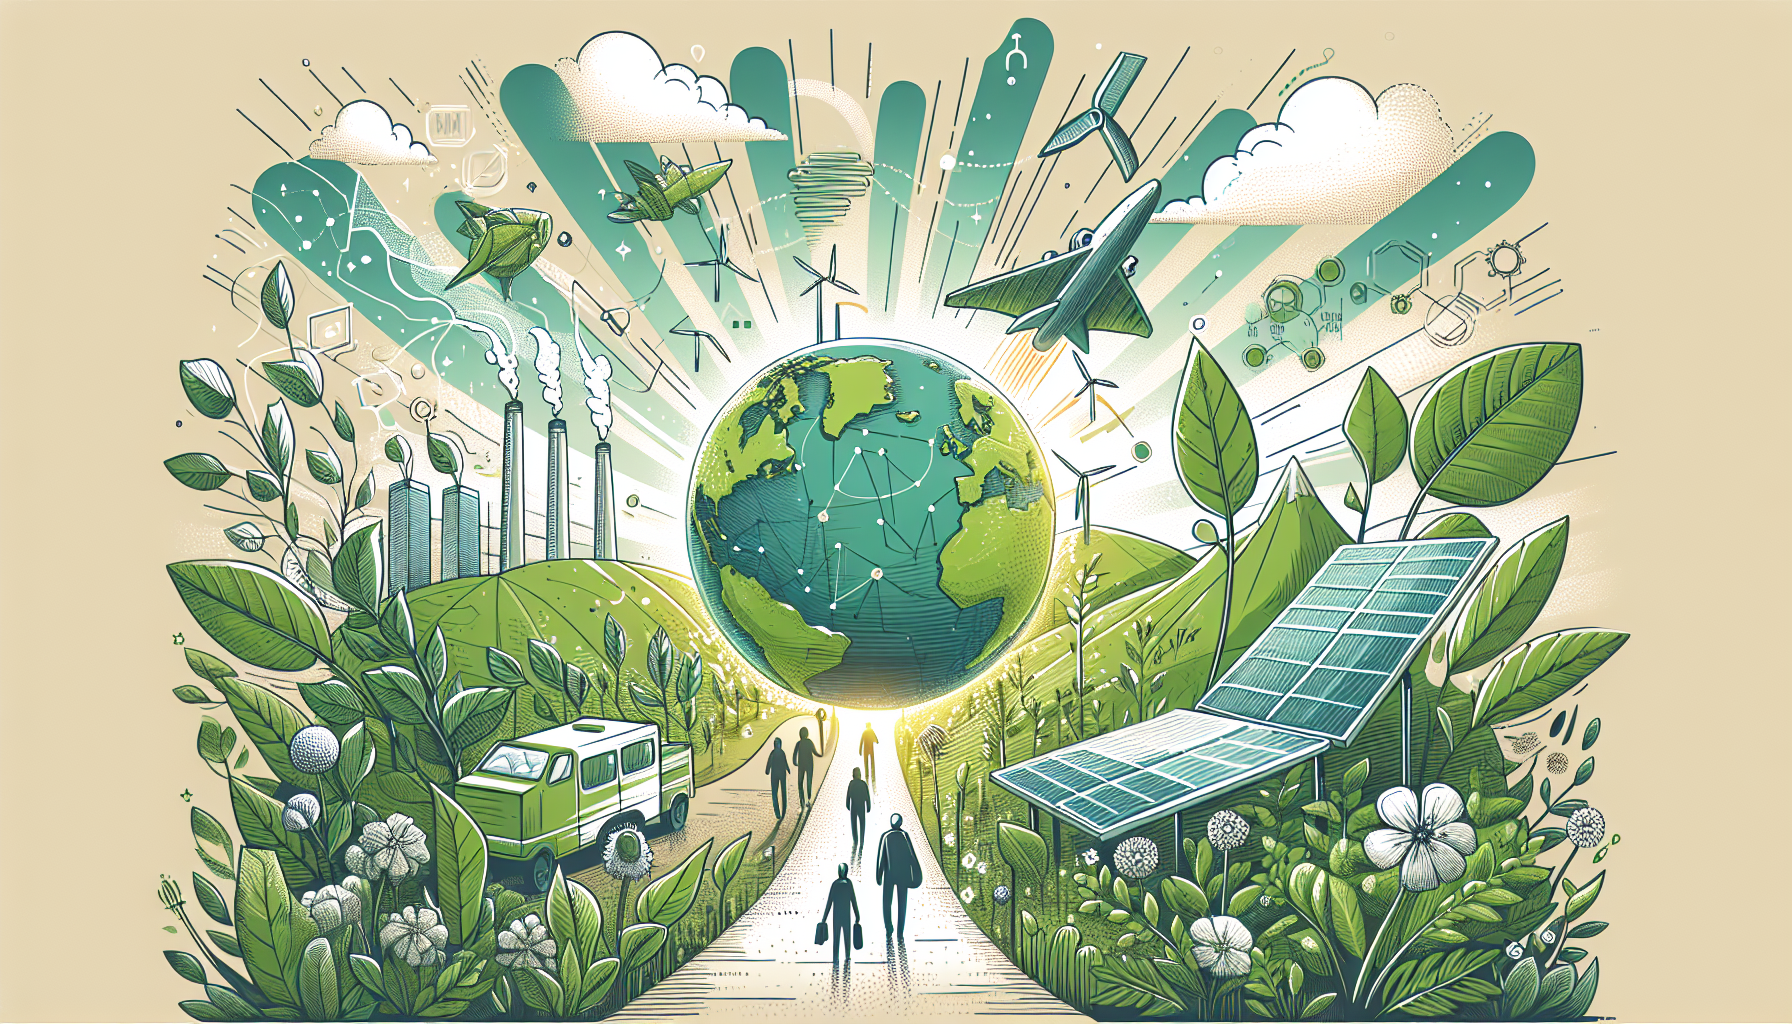 découvrez les avancées de l'innovation verte pour construire un avenir durable. quelles solutions et perspectives pour protéger l'environnement ?